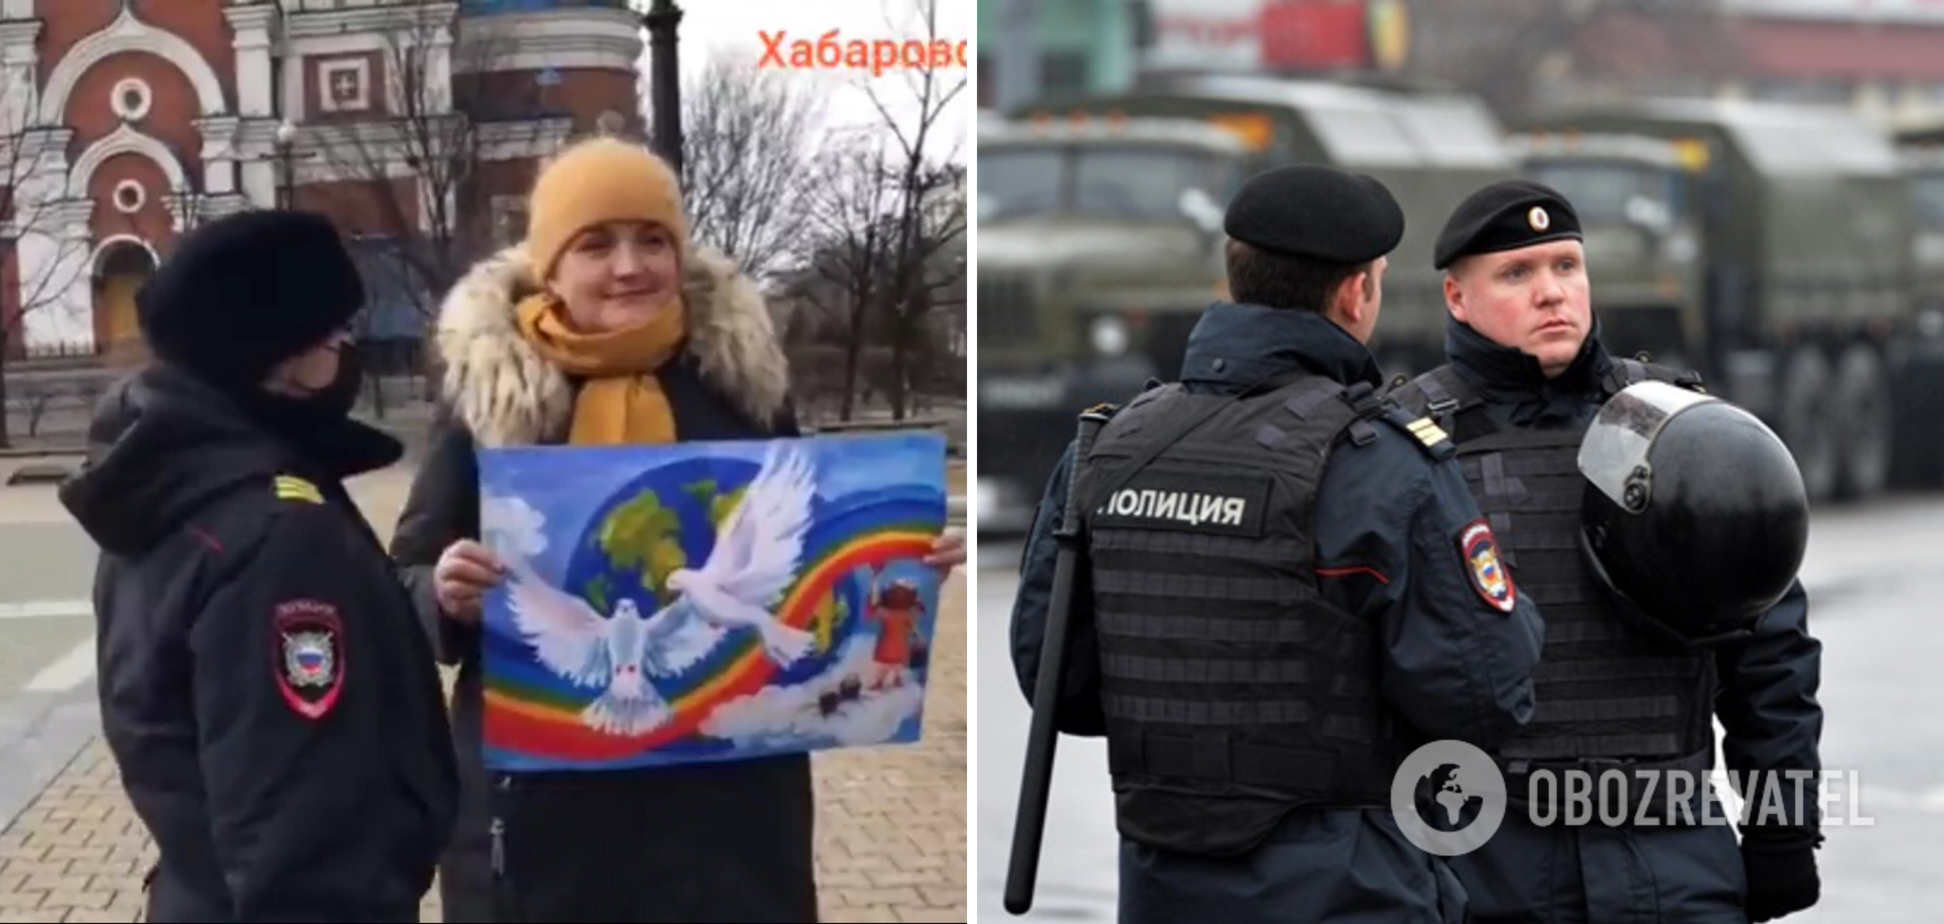 'Это агония власти': в России задержали женщину с детским рисунком, на котором изображен голубь мира. Видео